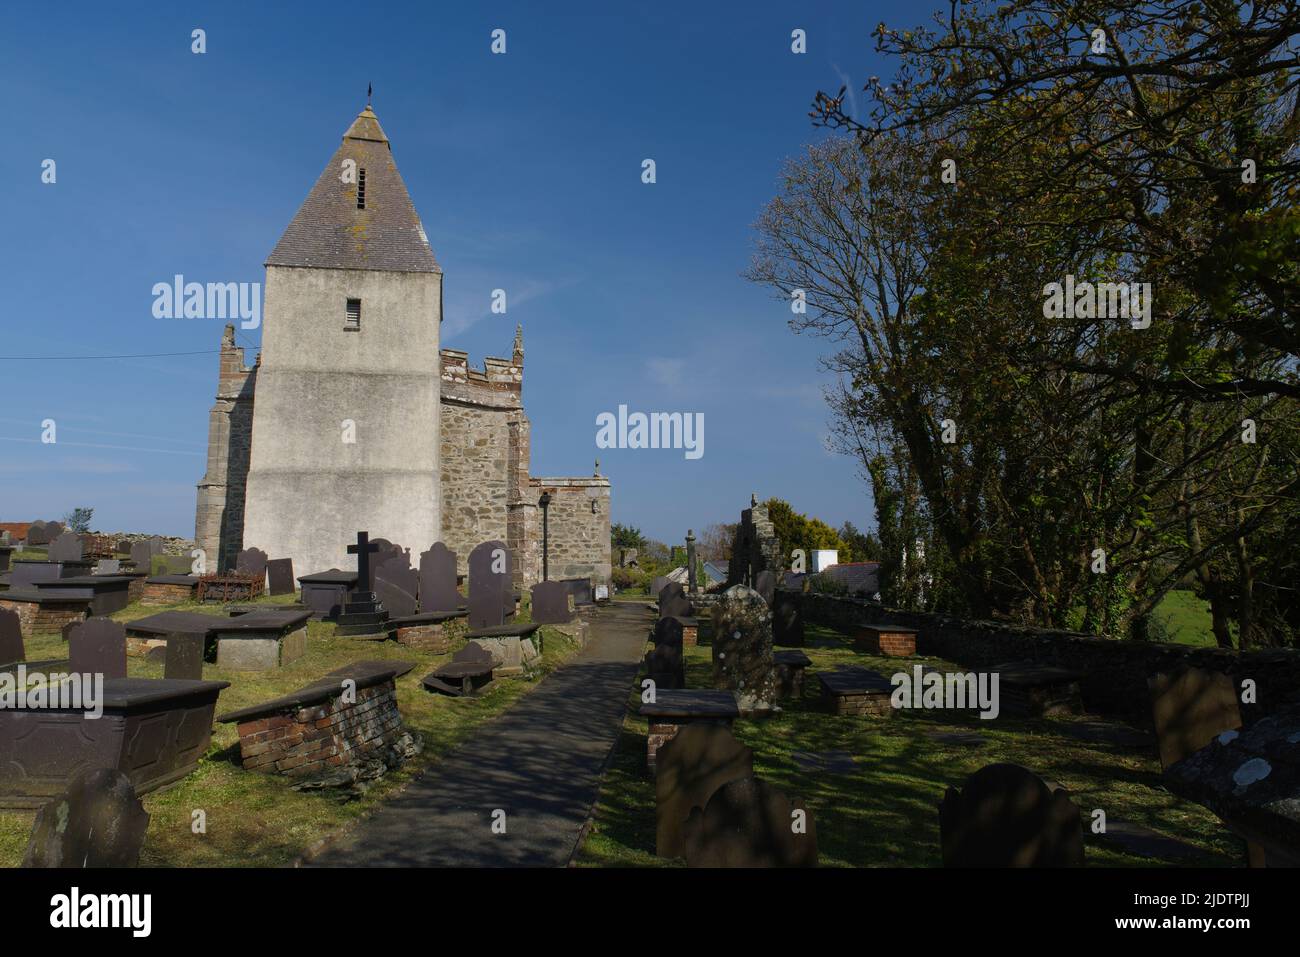 Llaneilian Church, Llaneilian, Amlwch, Anglesey, North Wales. Stock Photo